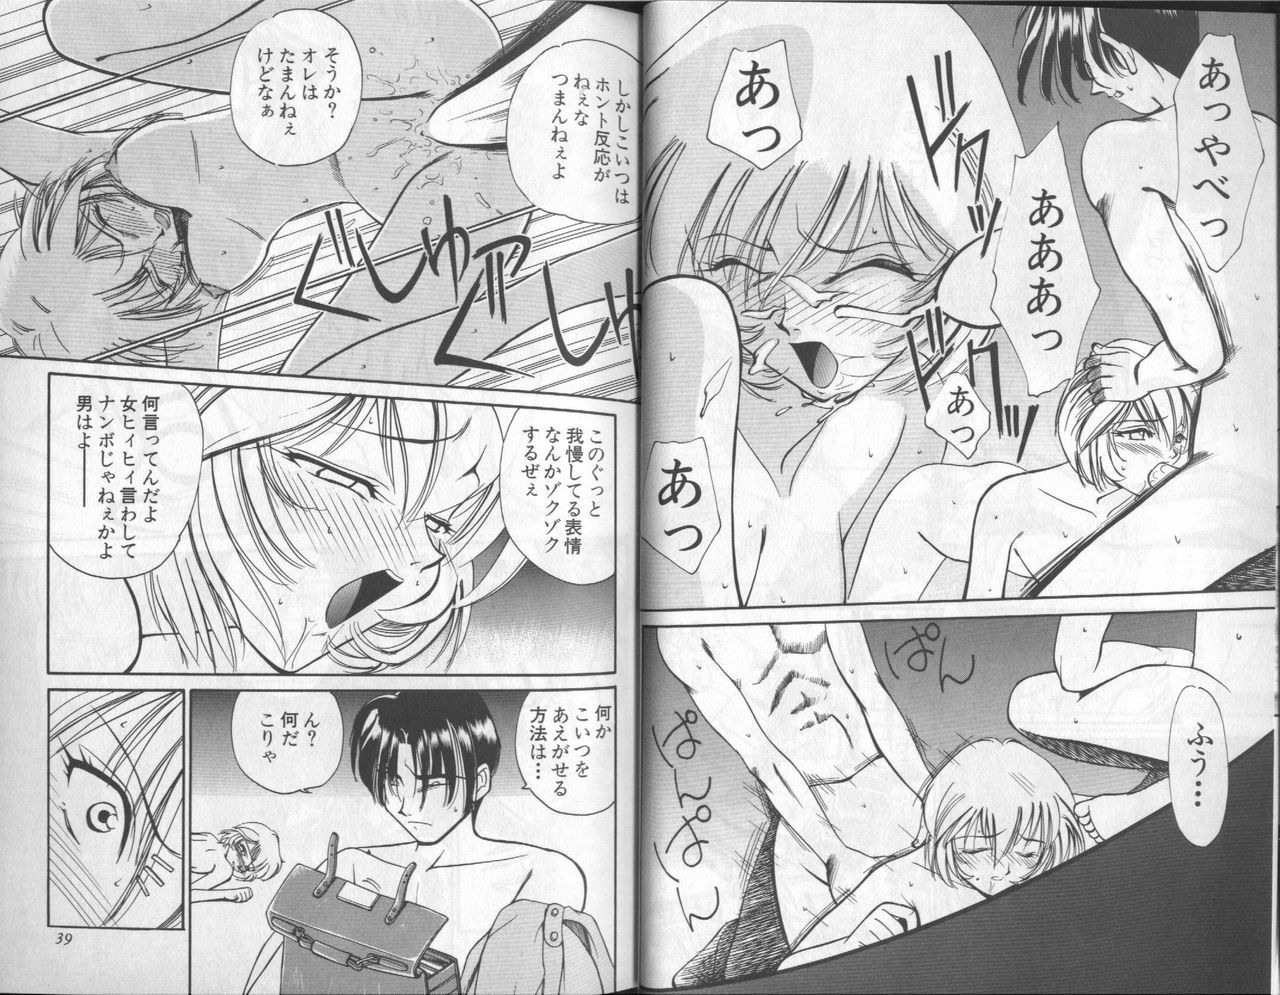 [Anthology] Shitsurakuen 6 | Paradise Lost 6 (Neon Genesis Evangelion) page 21 full